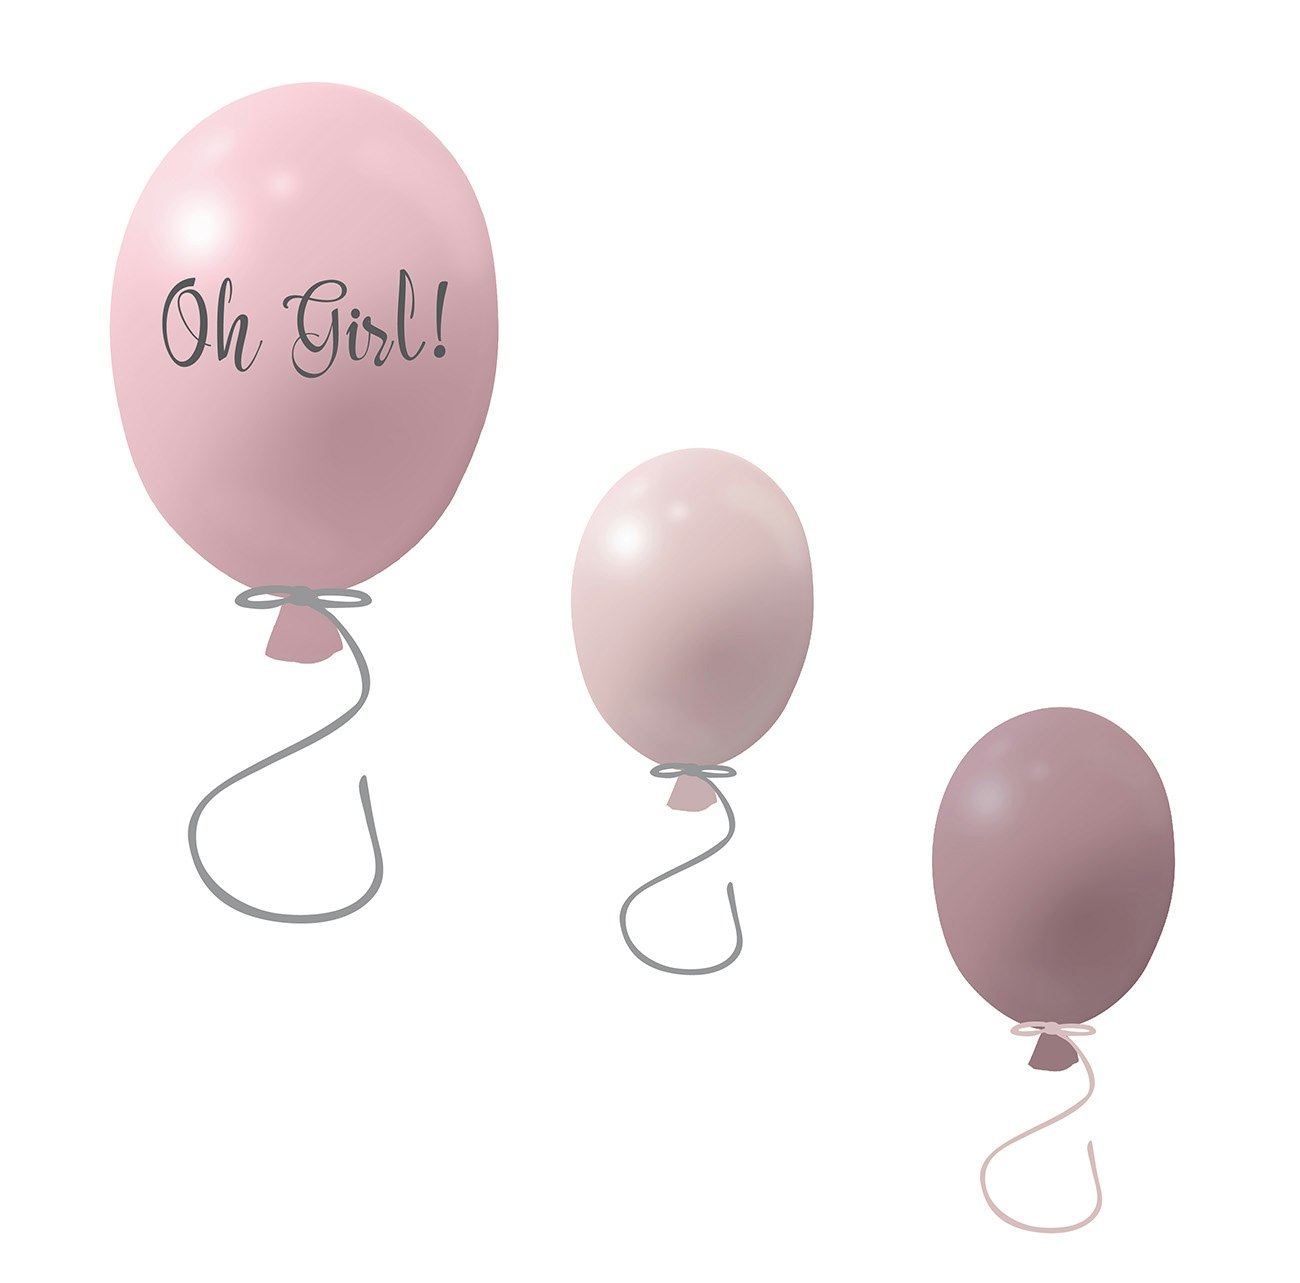 Väggklistermärke partyballonger 3-pack, rose Väggklistermärke bestående av en stor rosa ballong med texten Oh girl och två mindre ballonger